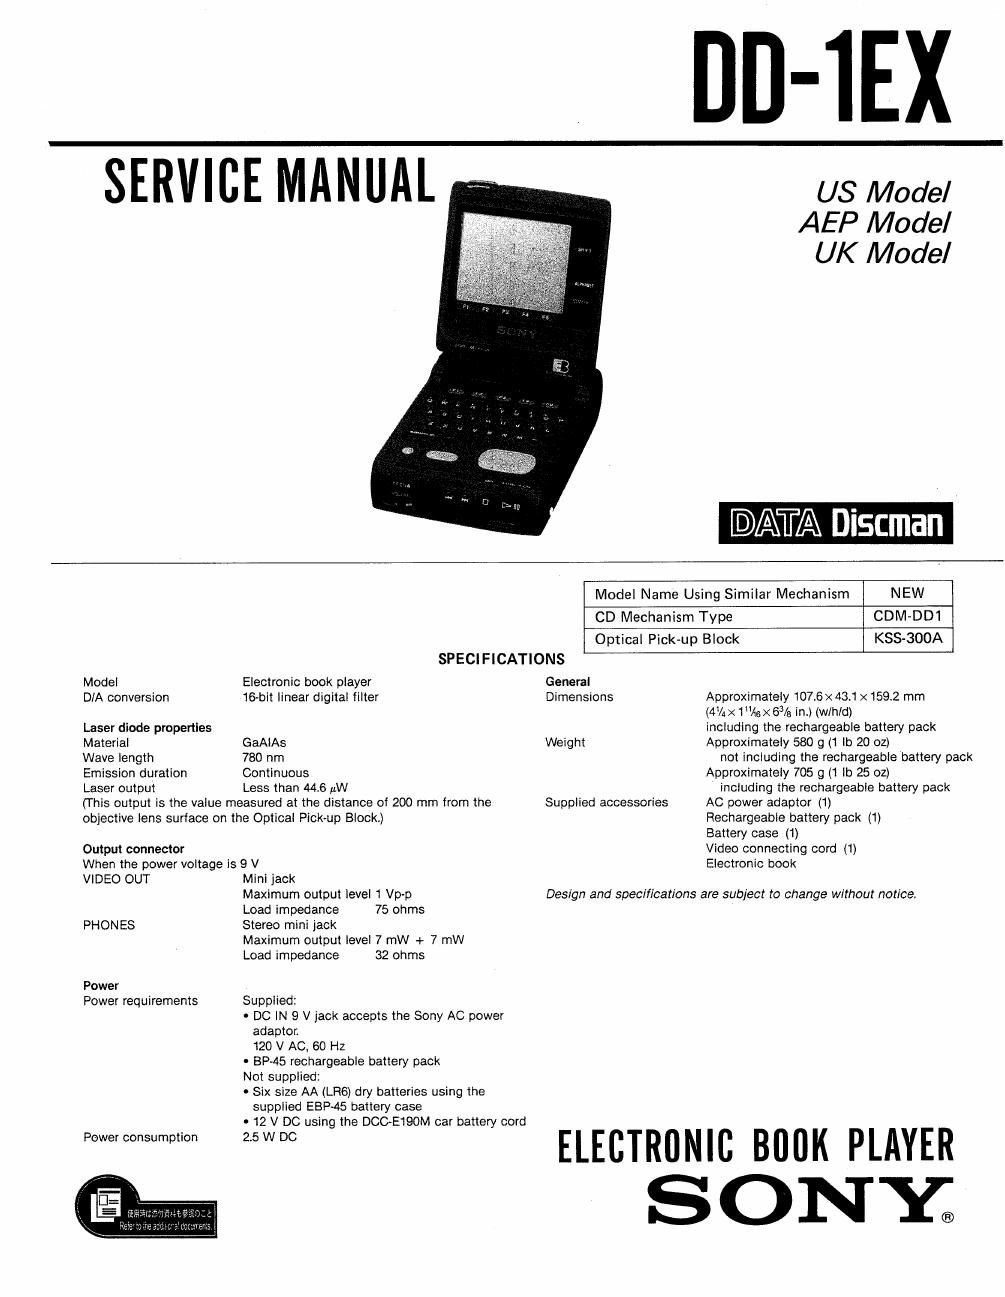 sony dd 1 ex service manual